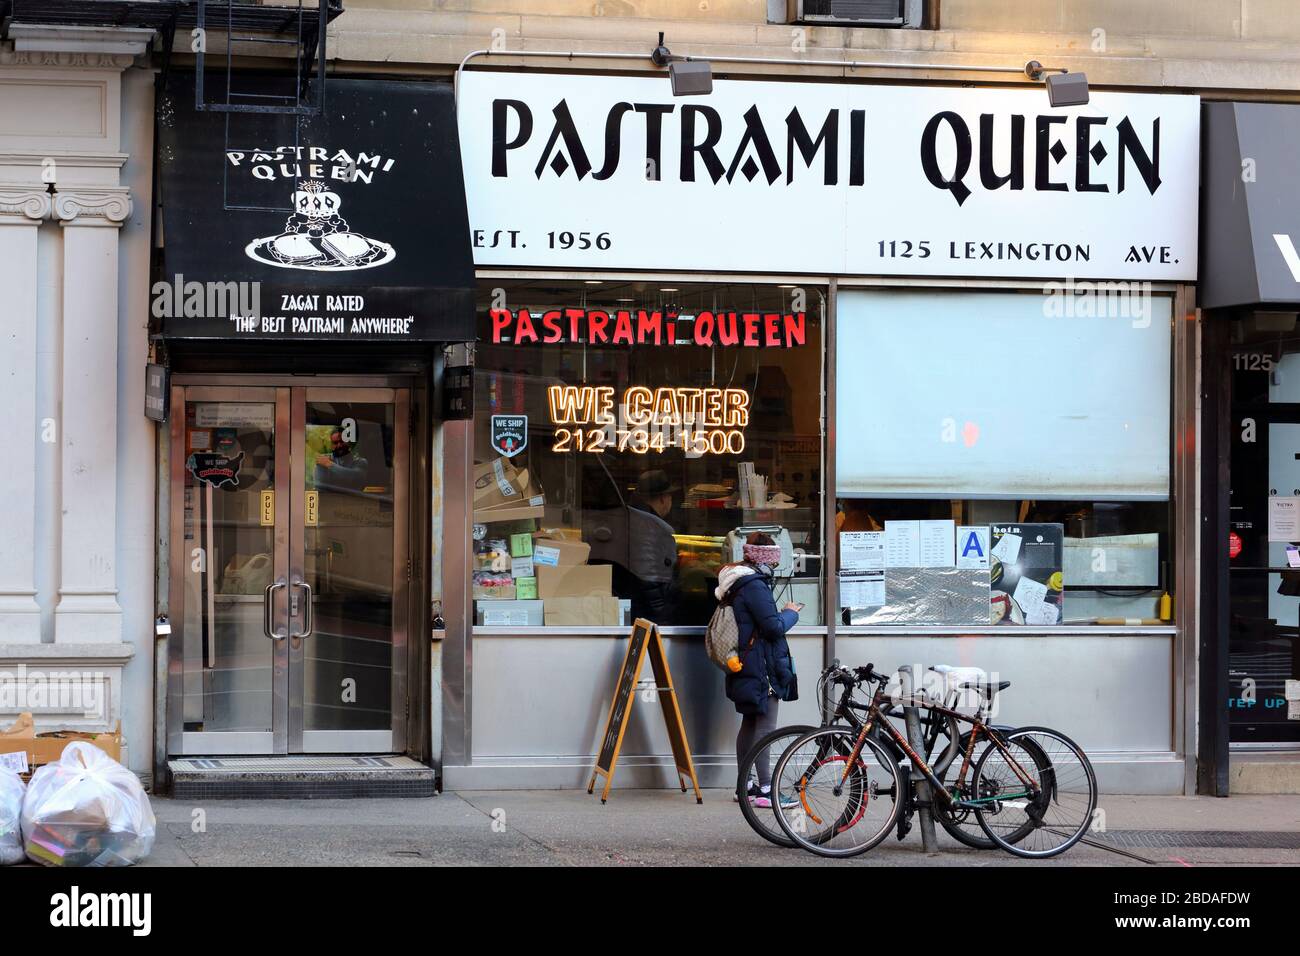 Pastrami Queen, 1125 Lexington Ave, New York, NYC photo d'un traiteur juif casher dans l'Upper East Side de Manhattan. Banque D'Images